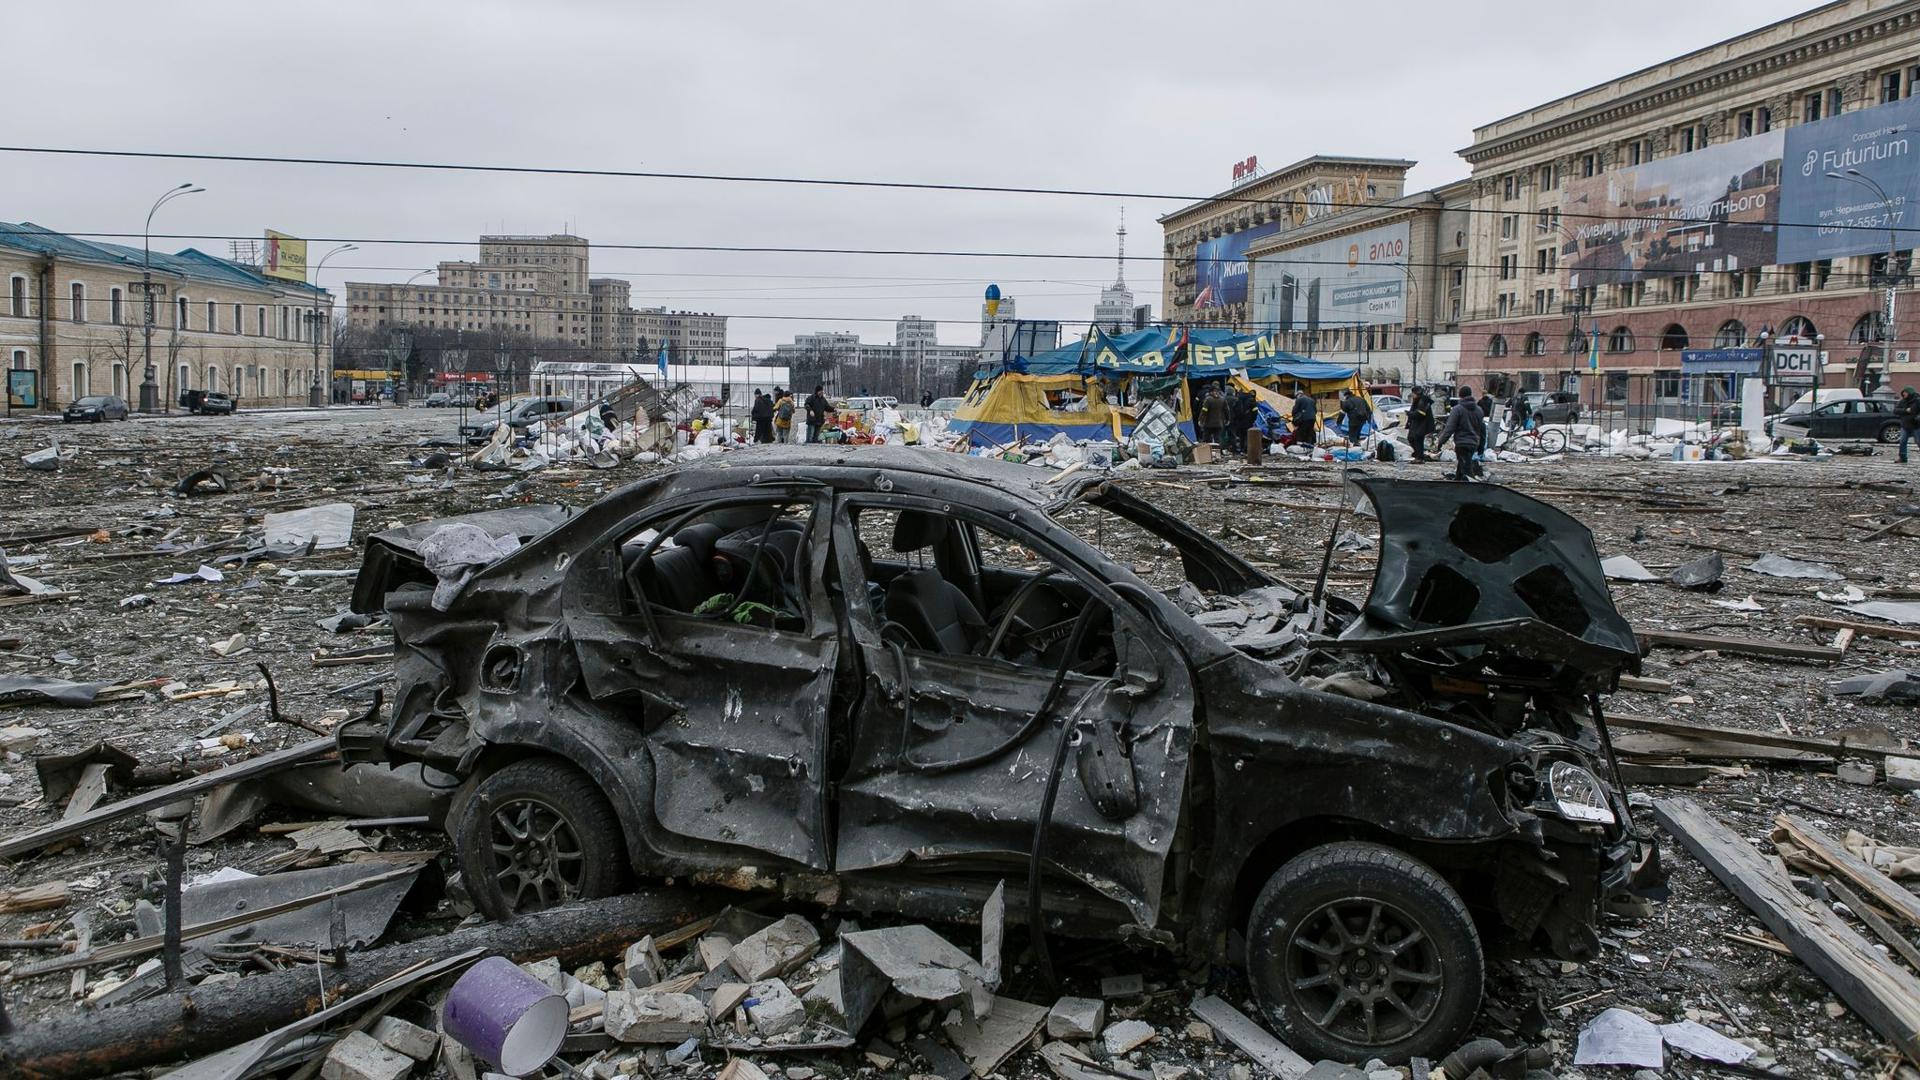 Der zentrale Platz in Charkiw liegt nach dem Beschuss des Rathauses in Trümmern.